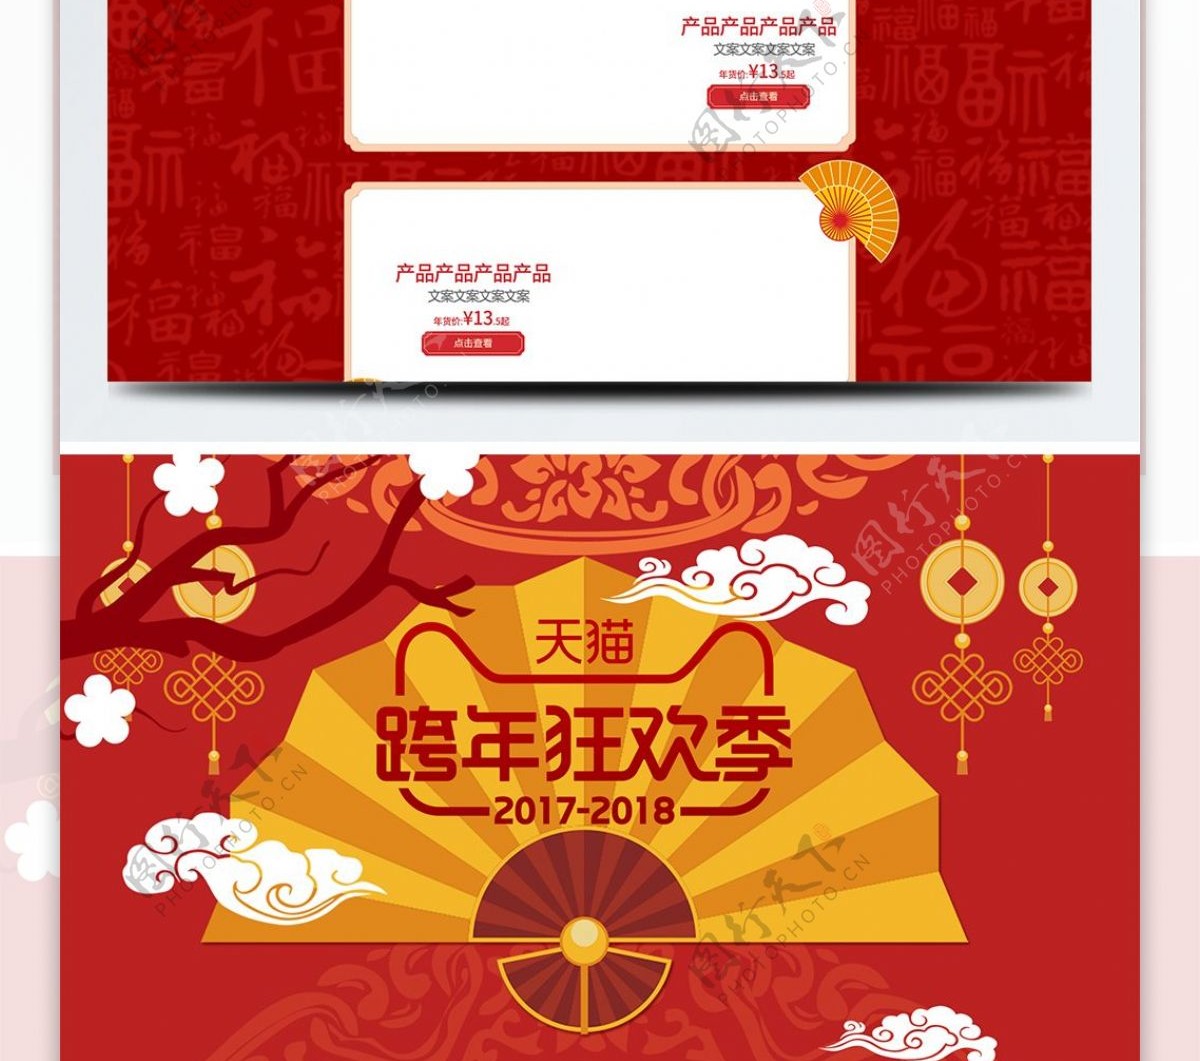 红色中国风跨年狂欢季扇子喜庆女装首页